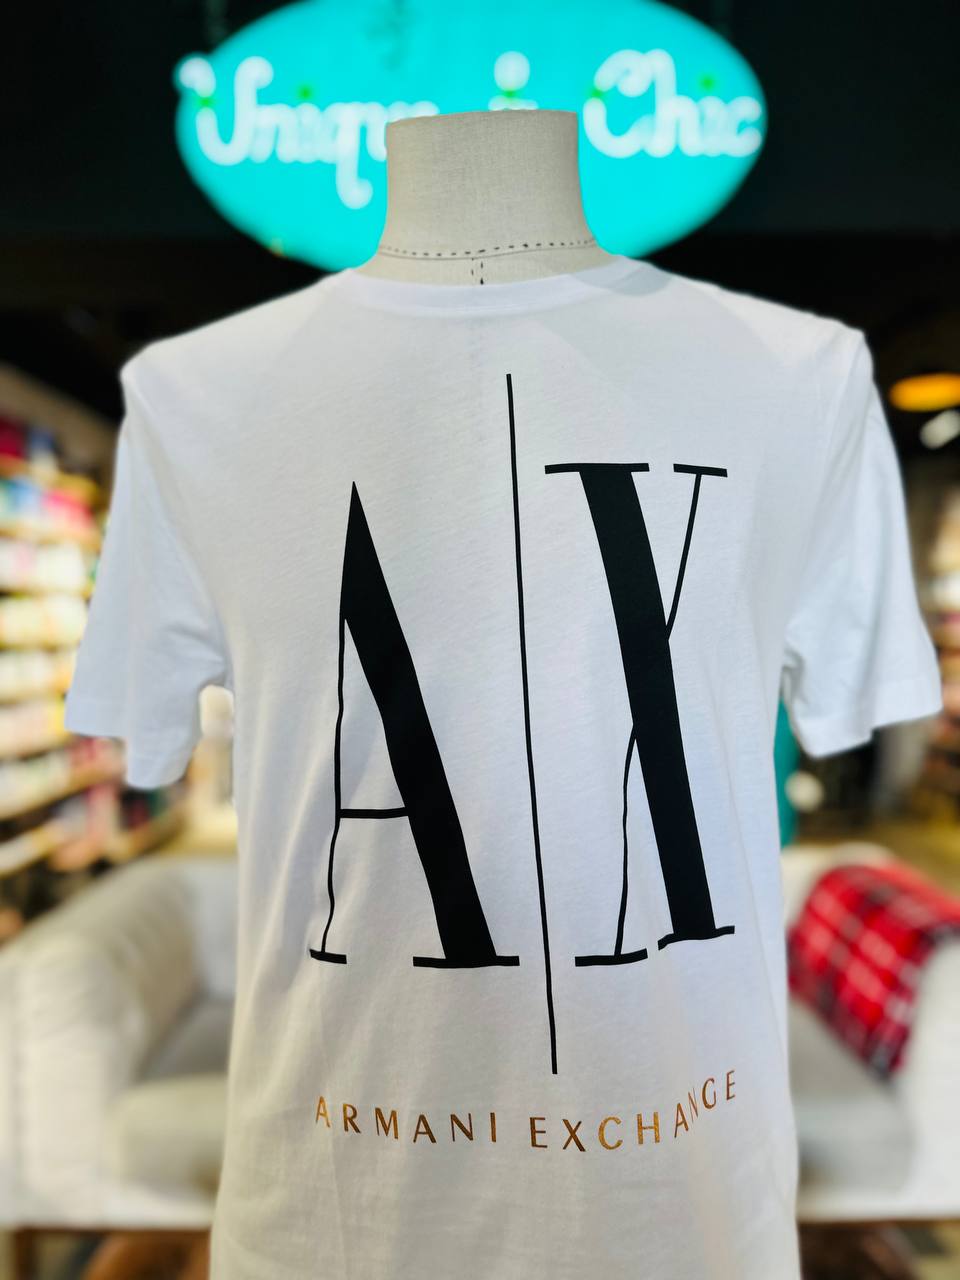 Armani exchange shirt